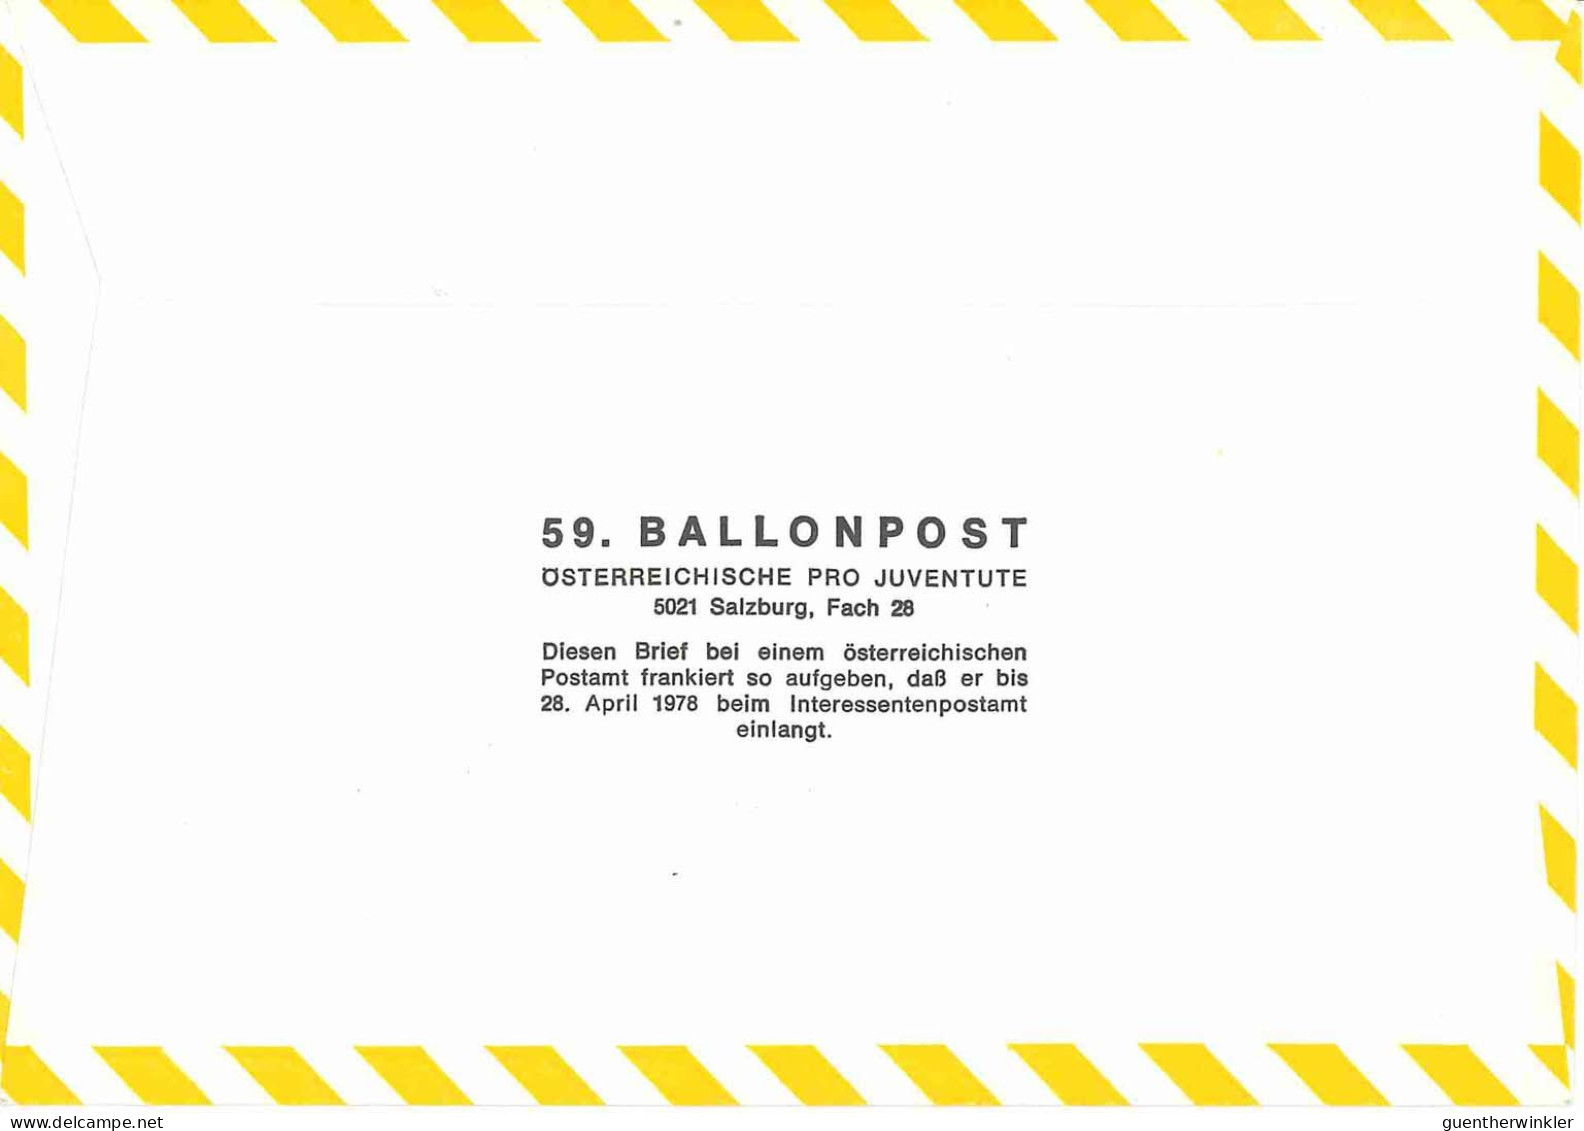 Regulärer Ballonpostflug Nr. 59a Der Pro Juventute [RBP59a] - Per Palloni